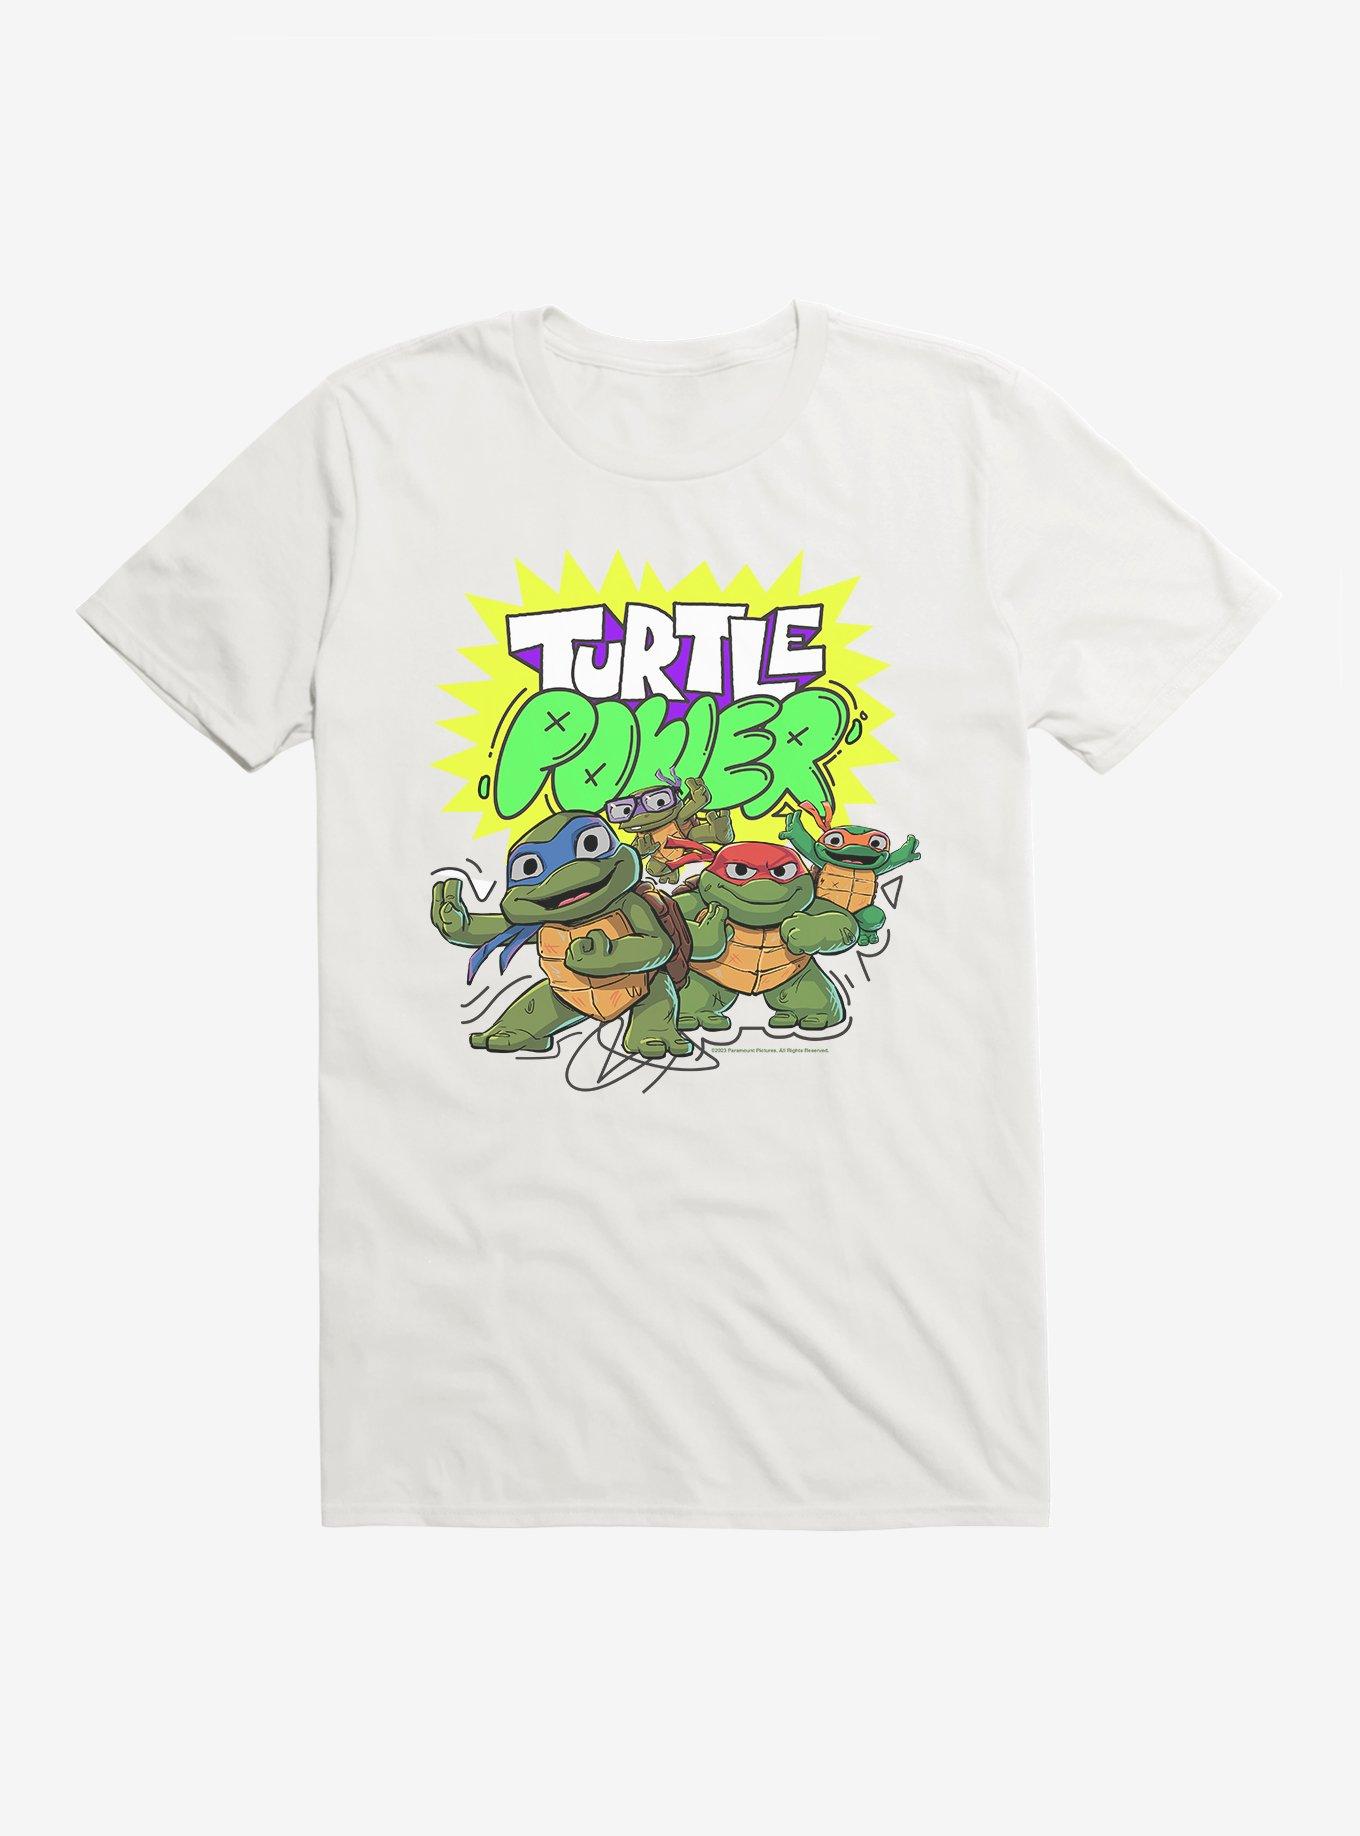 Teenage Mutant Ninja Turtles: Mutant Mayhem Turtle Power T-Shirt